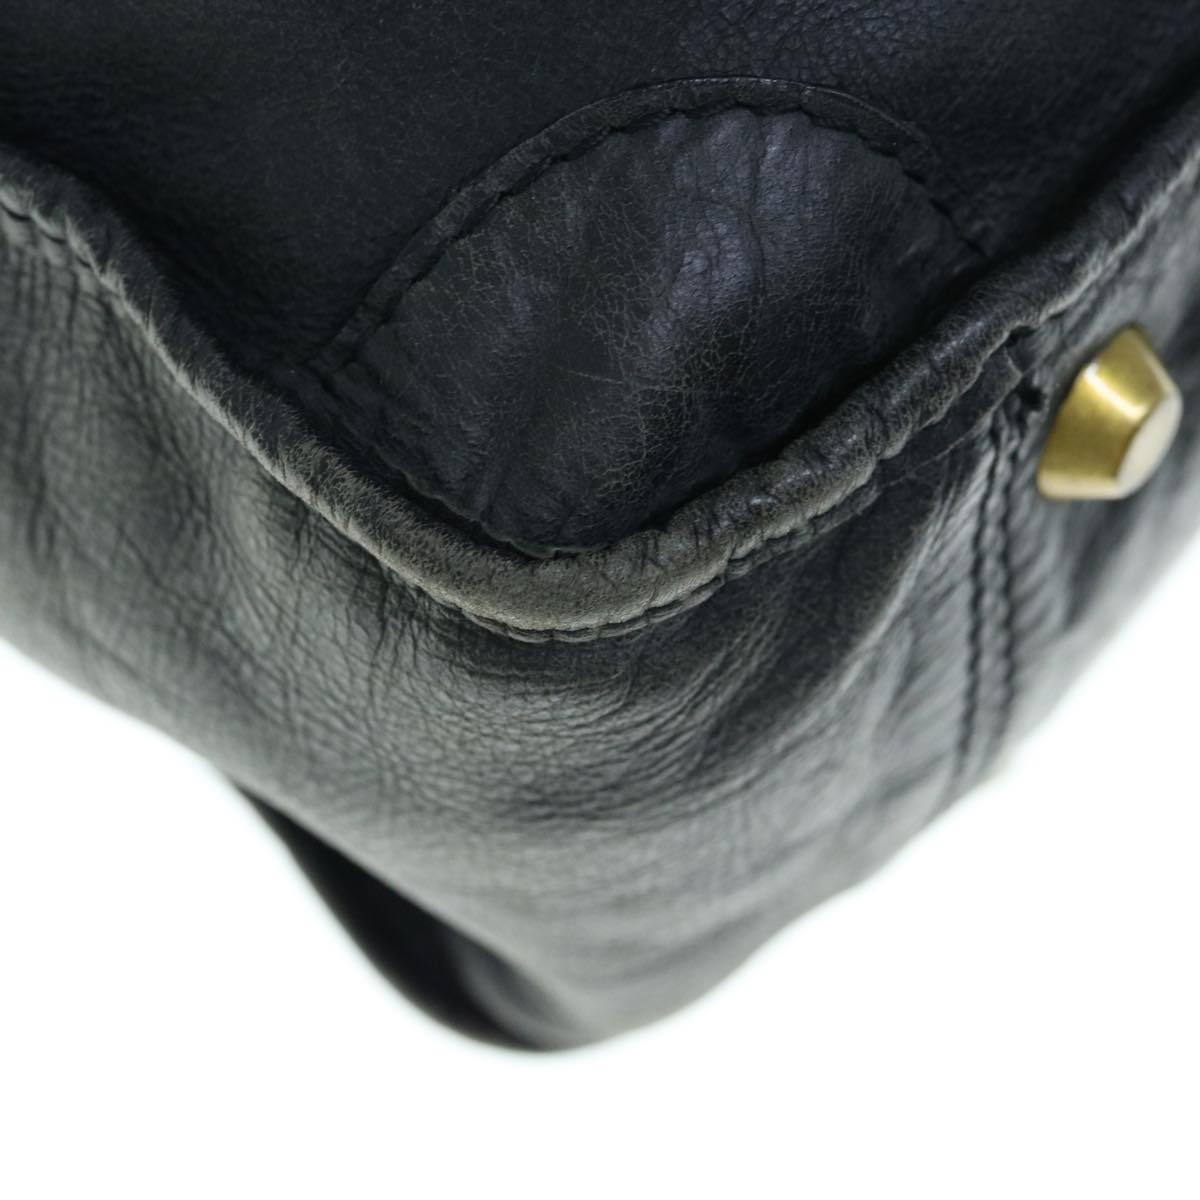 Chloe Shoulder Bag Leather Black Auth fm3114